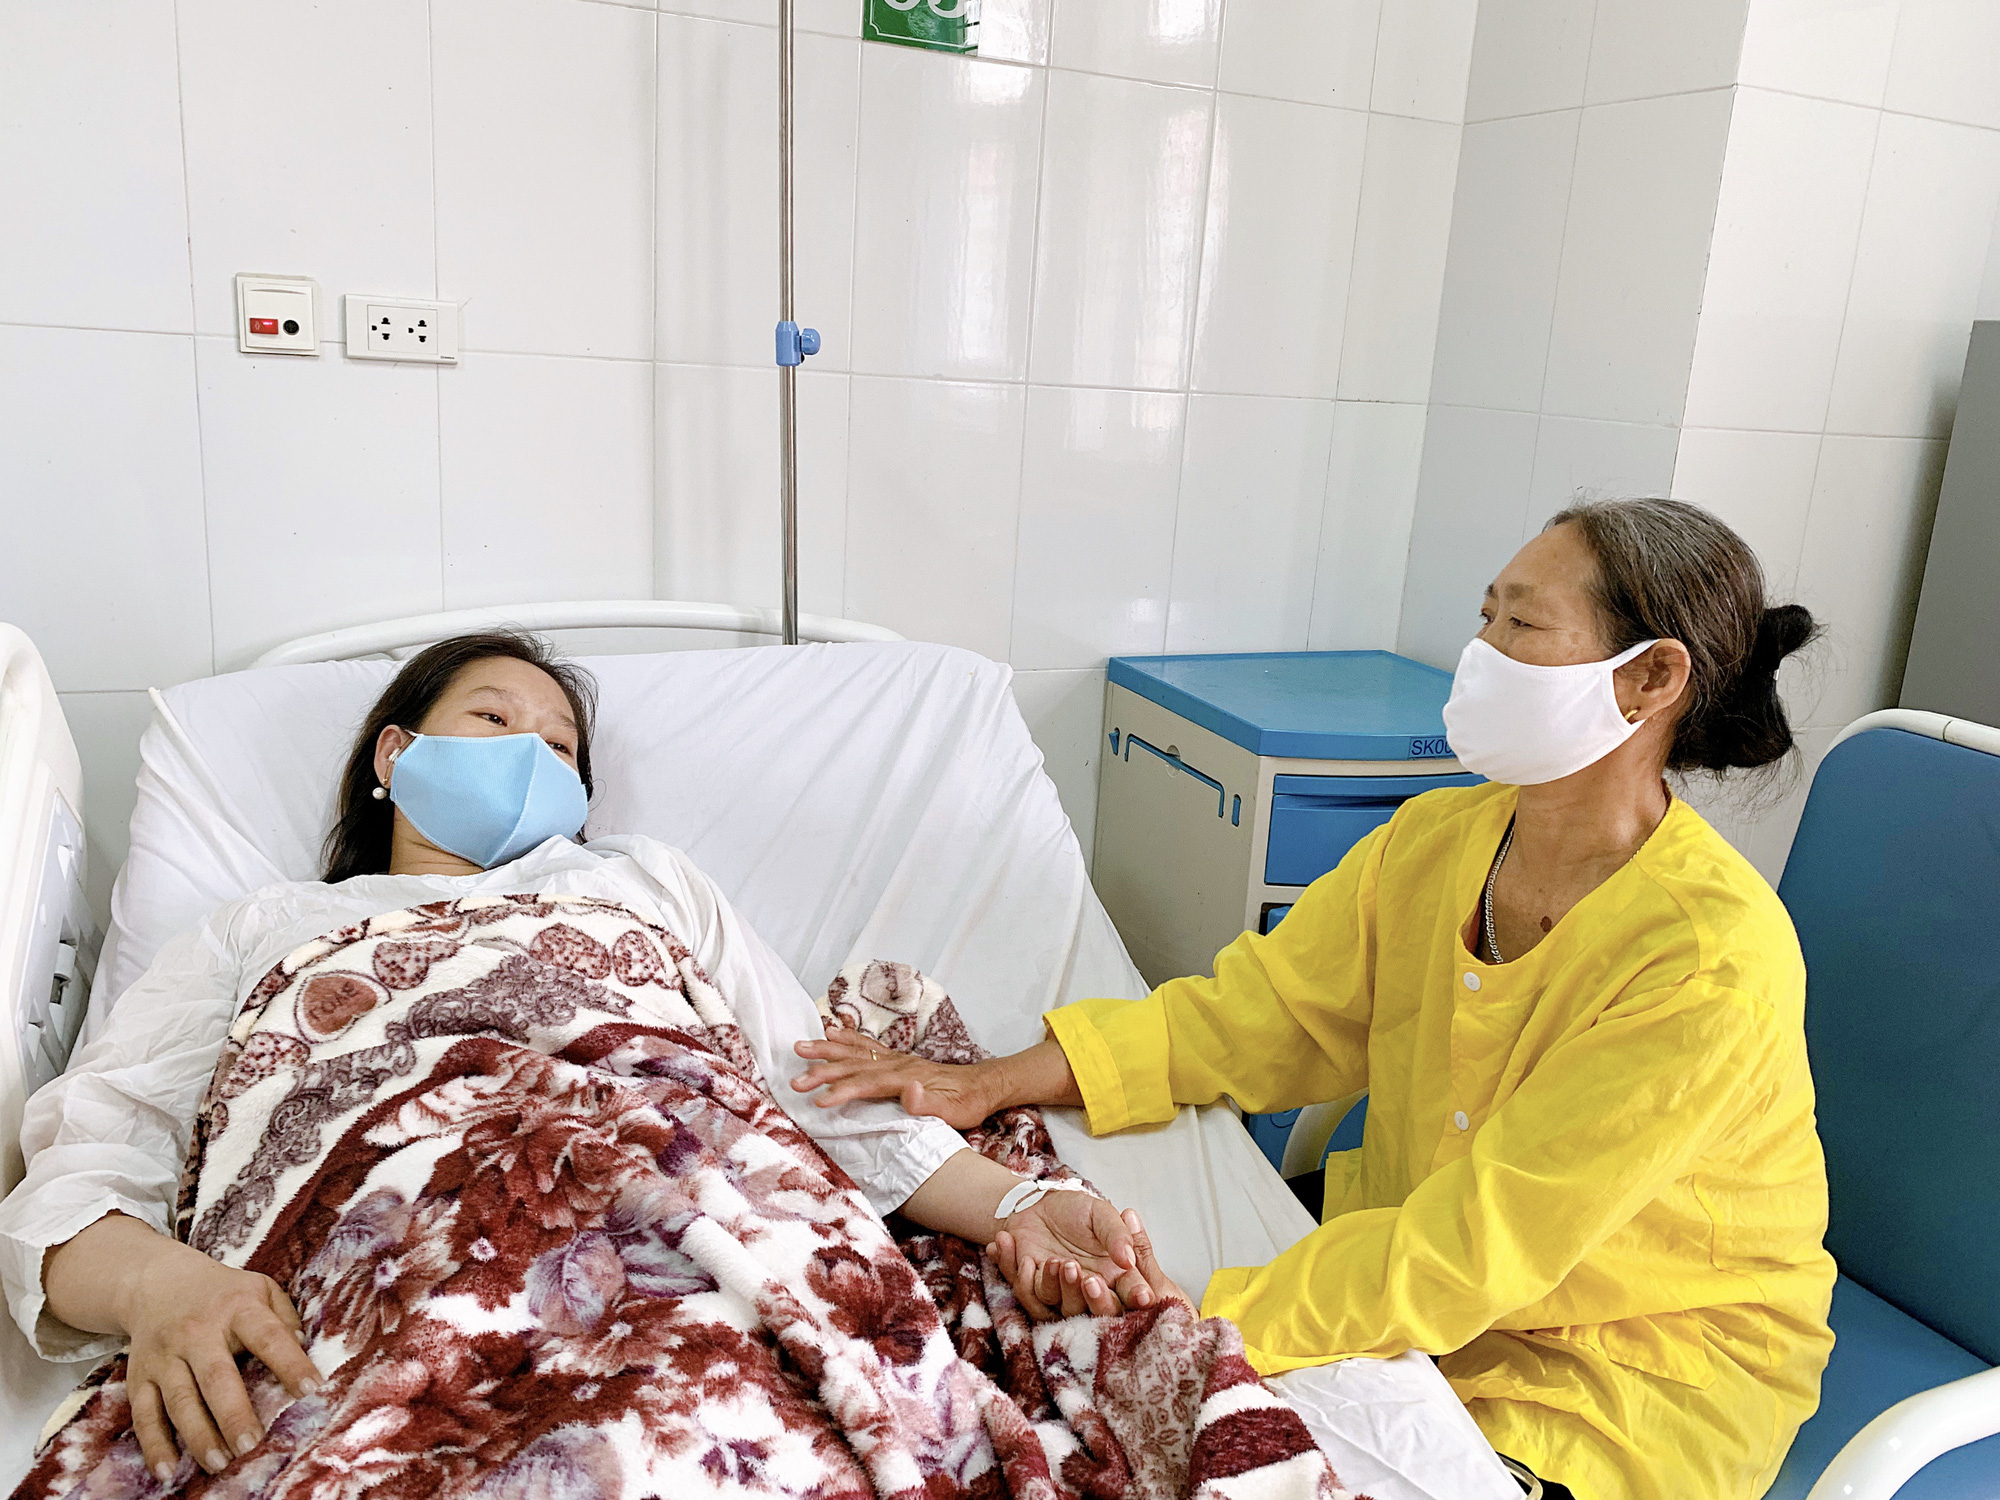 Thai phụ 6 tháng ở Hà Nội tử vong sau 2 ngày cấp cứu: Những điều cần biết về hội chứng HELLP - cơn ác mộng trong thai kỳ đối với bất cứ ai - Ảnh 3.